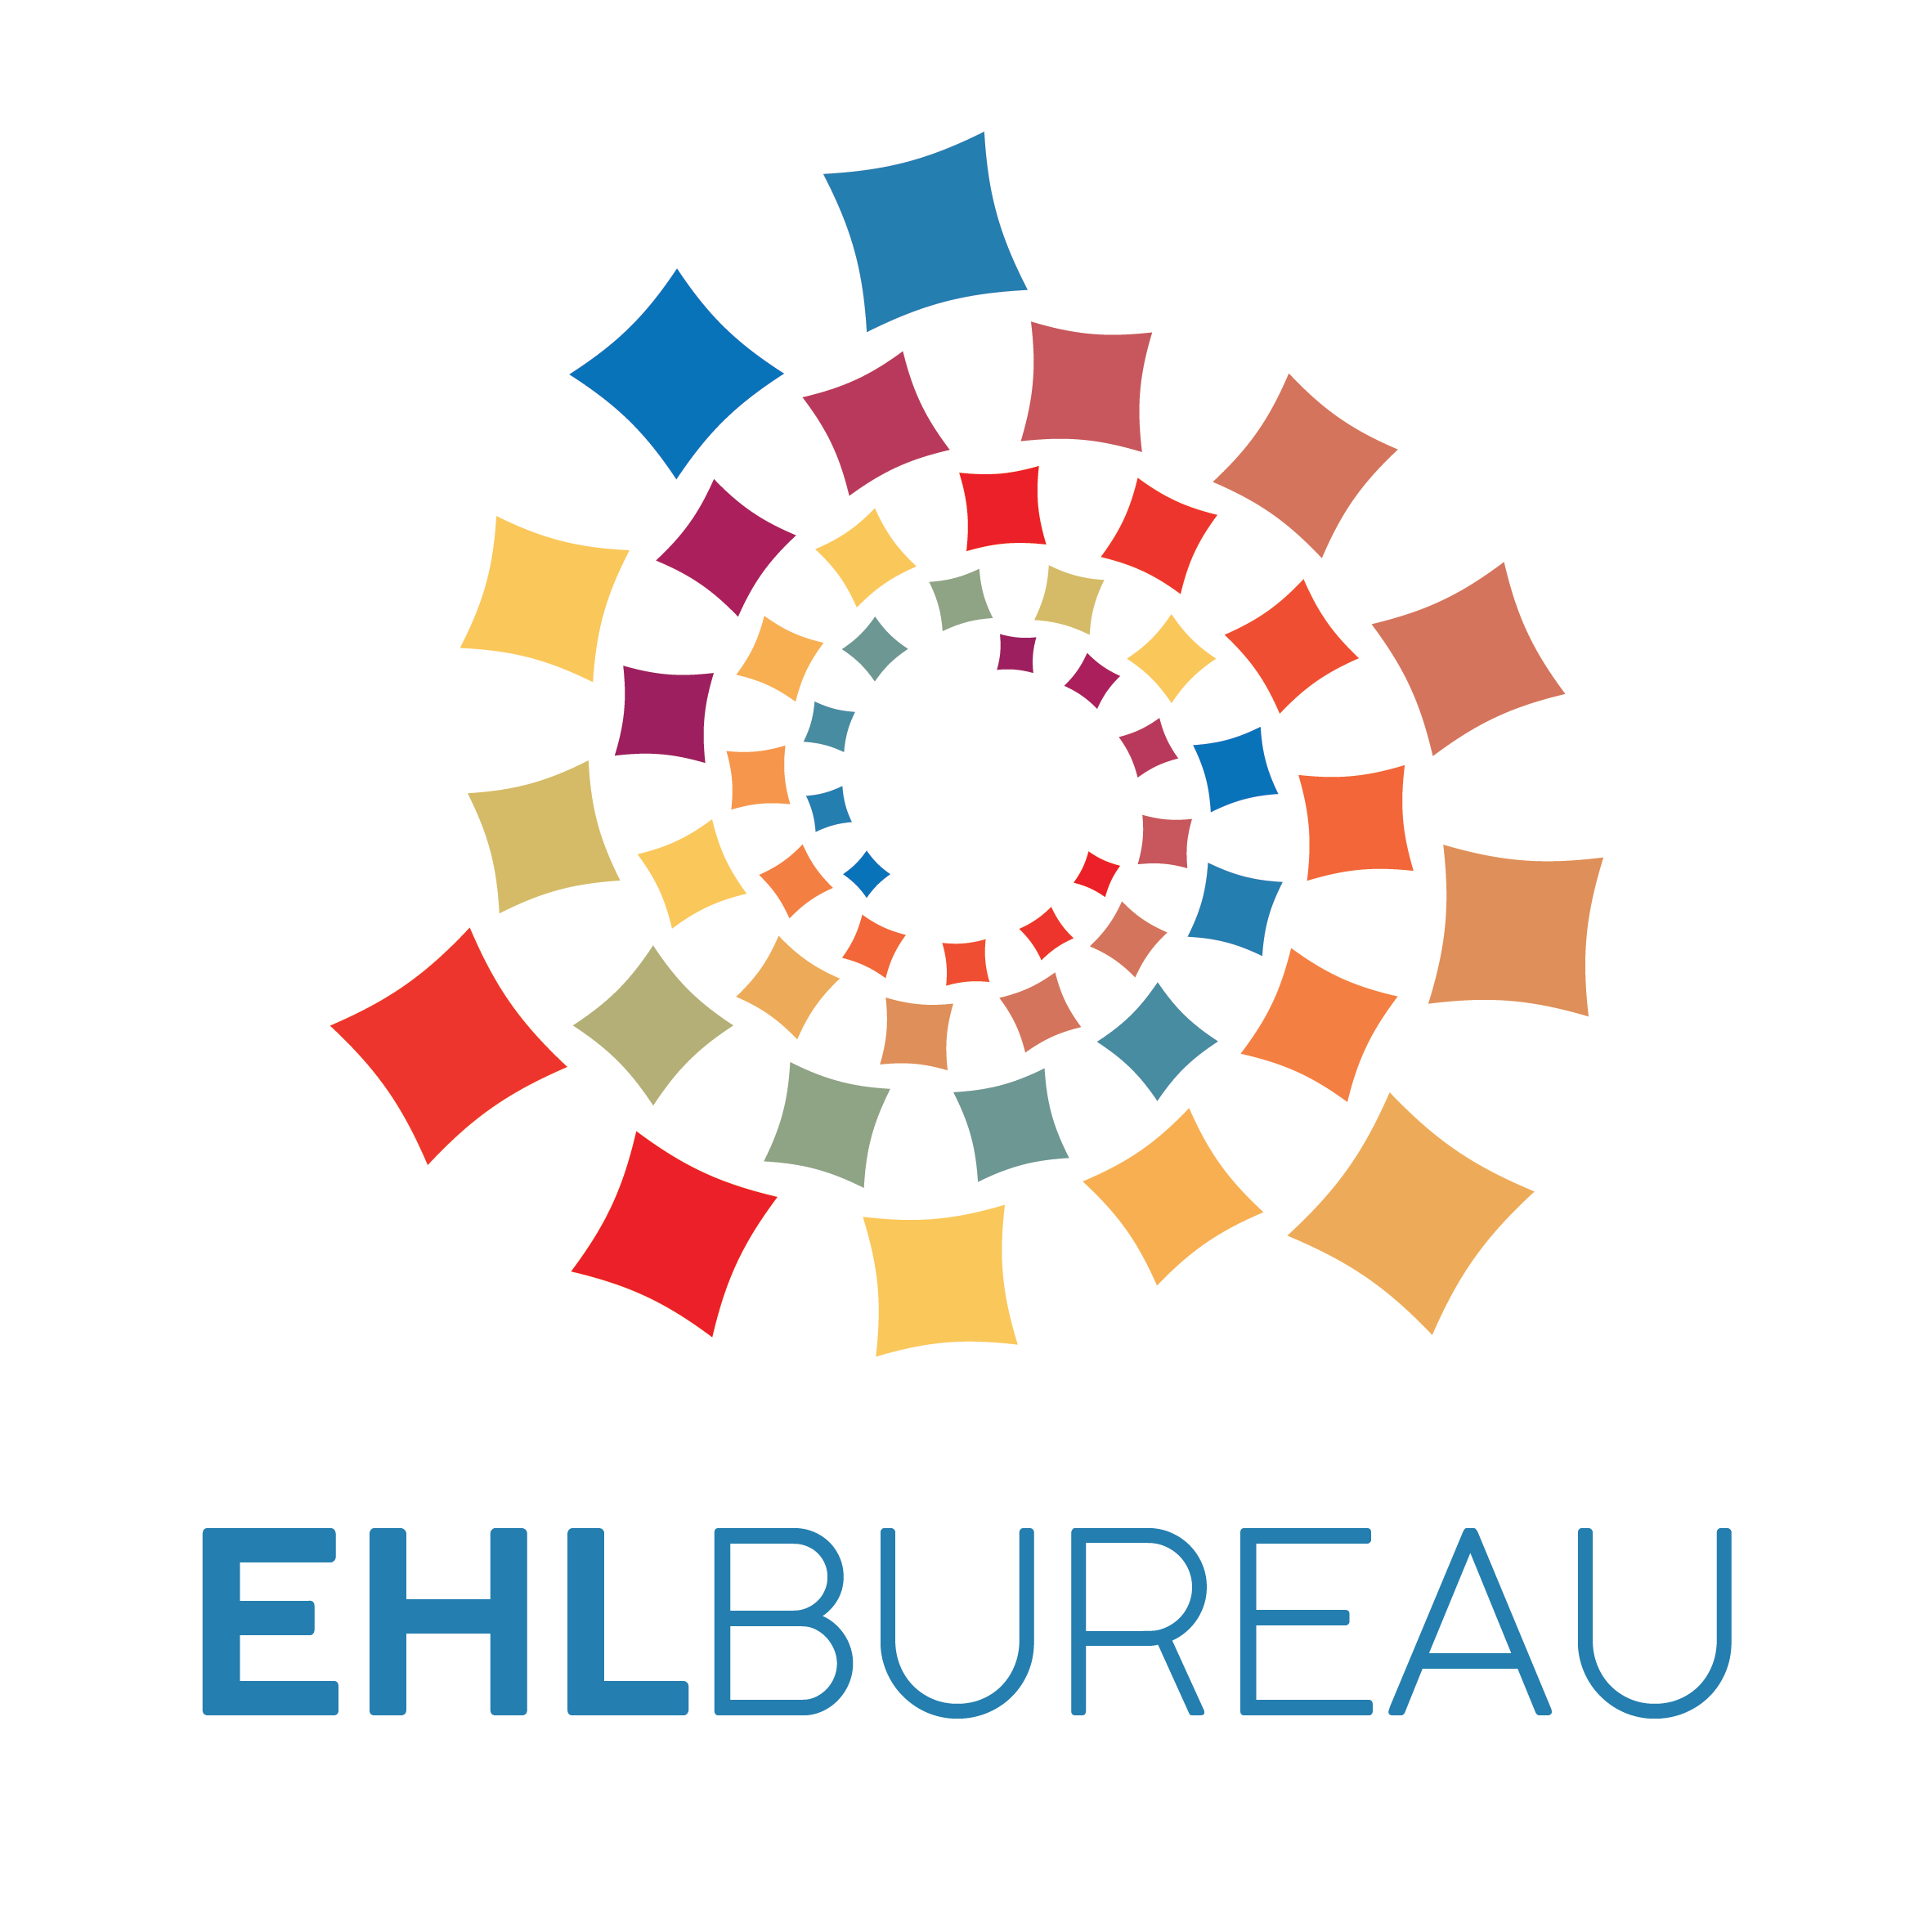 EHLBureau logo